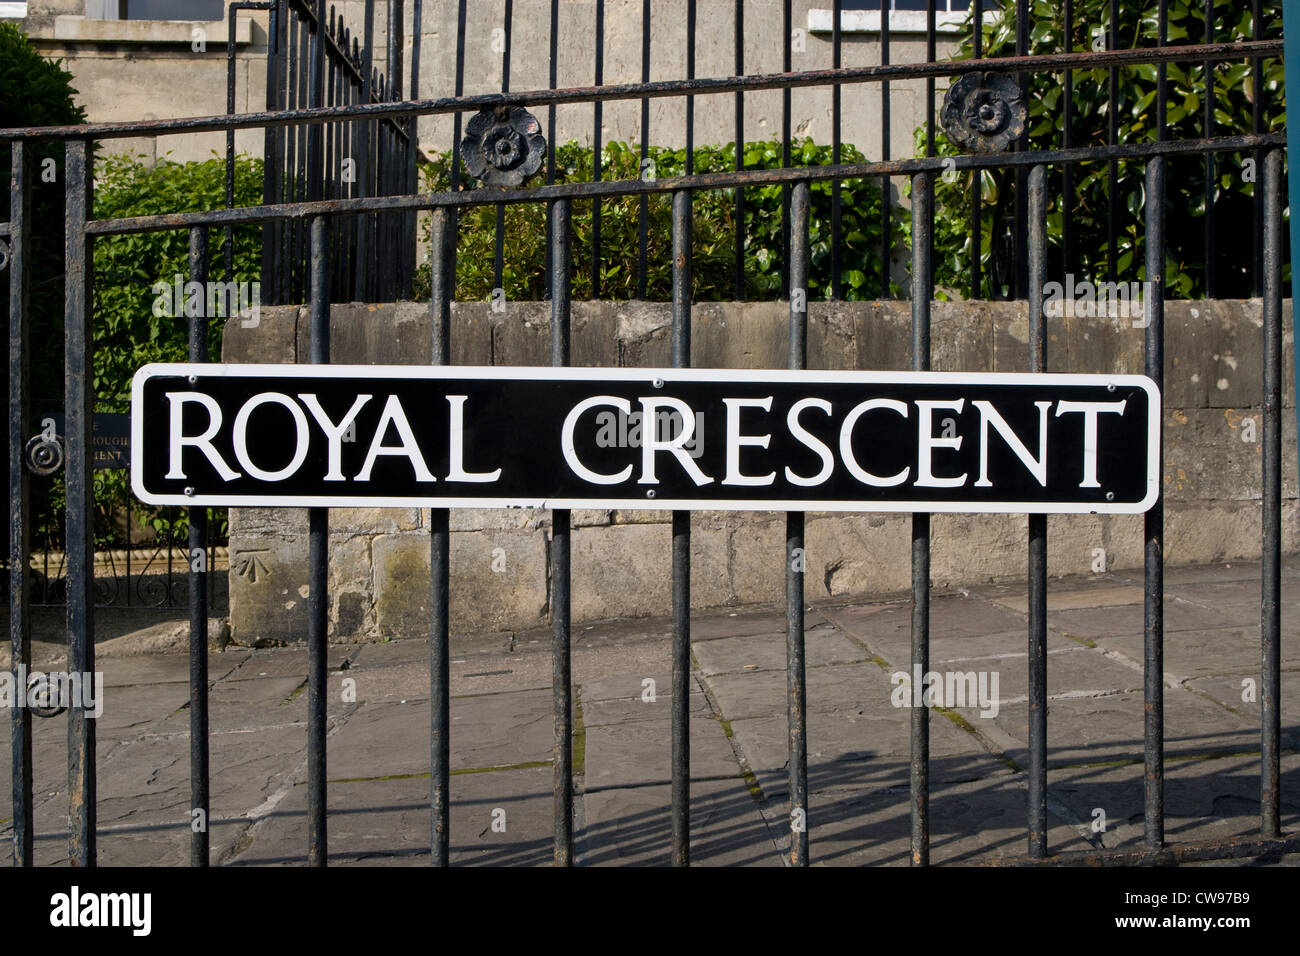 Baignoire : Royal Crescent sign Banque D'Images